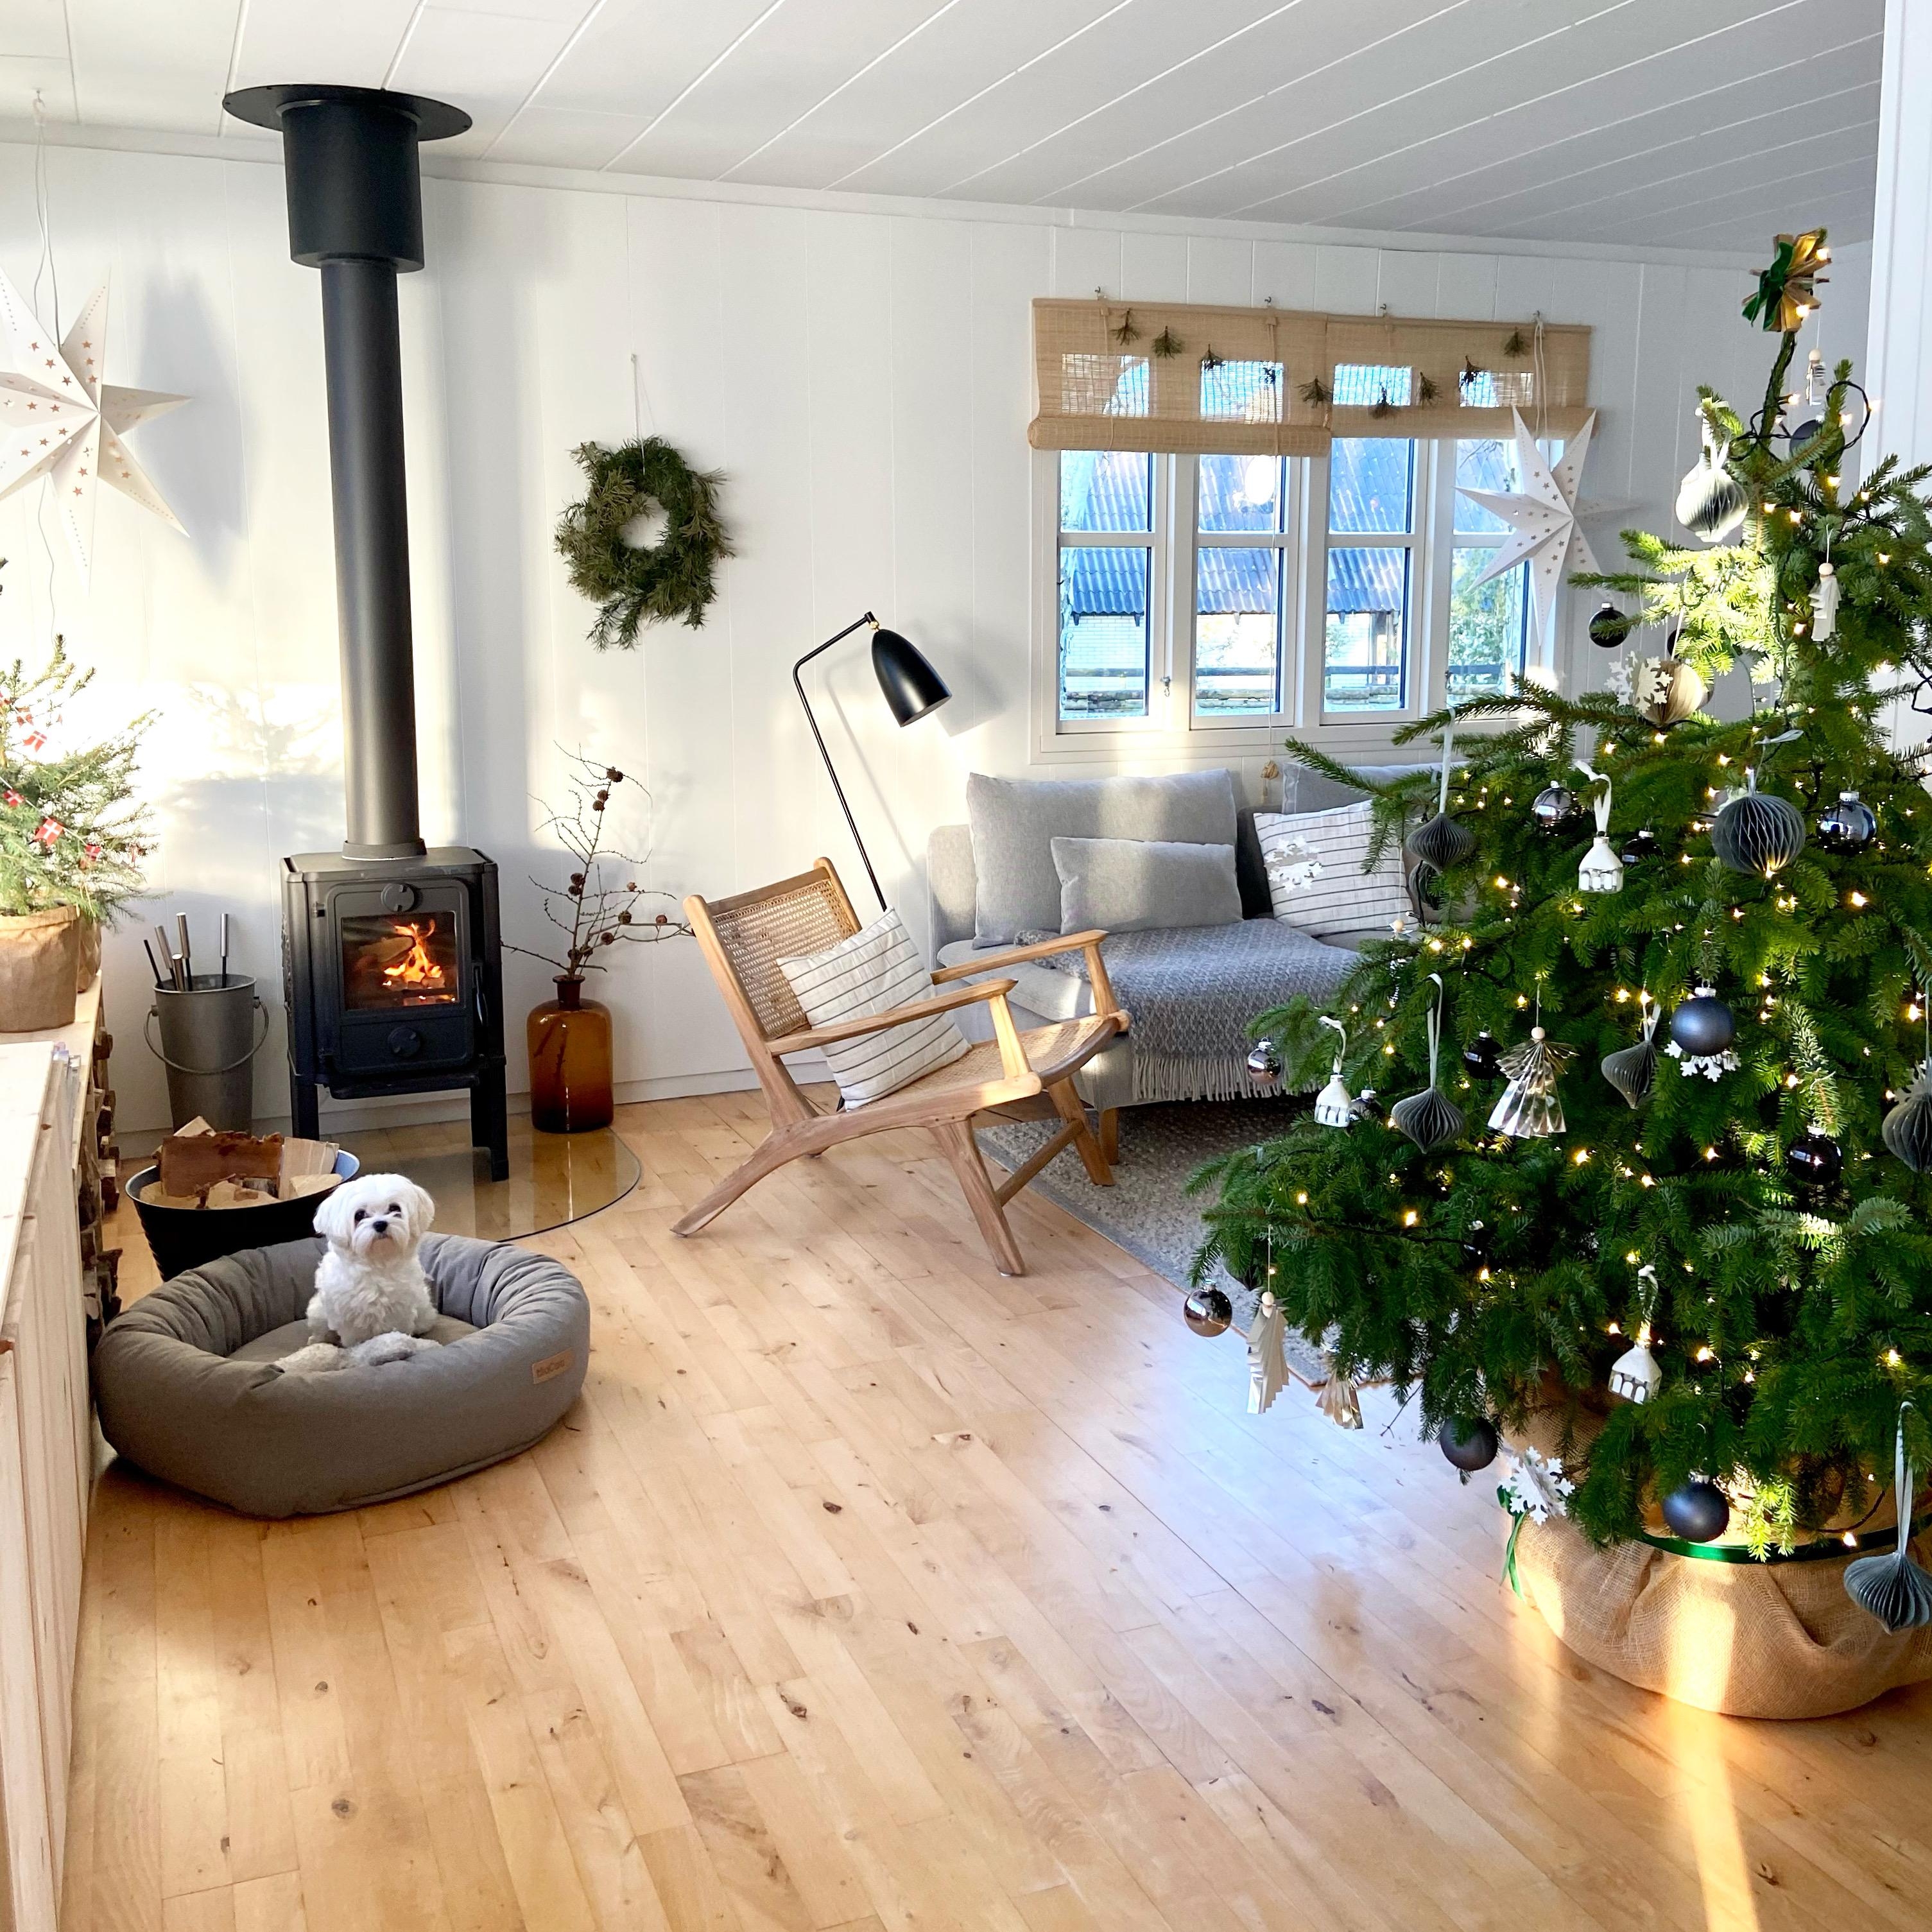 Frohe Weihnachten!
#livingroom #wohnzimmerinspo #wohnzimmer 